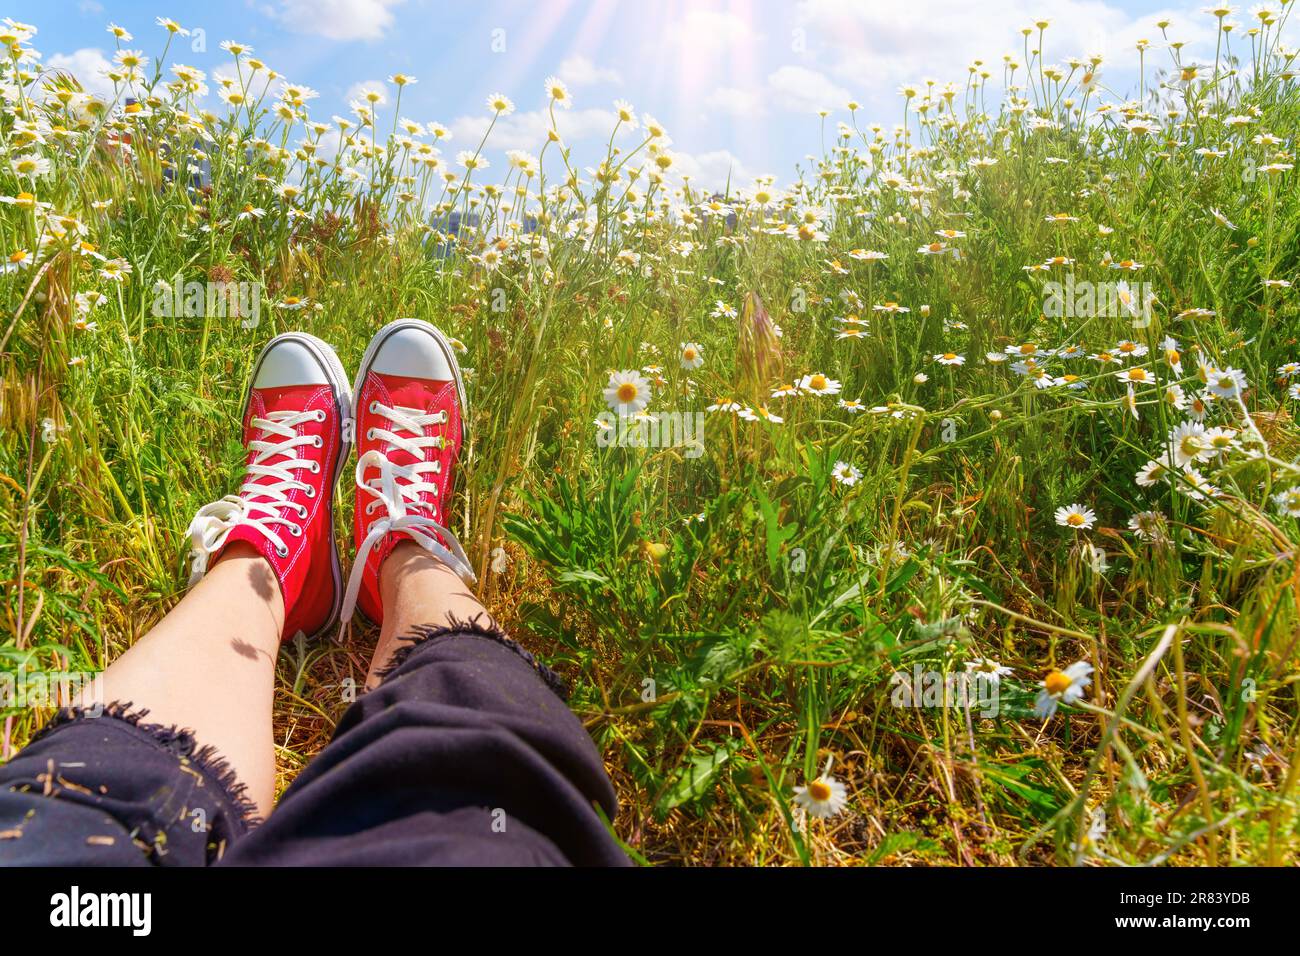 Crogiolandosi nel calore dei dolci raggi del sole, un paio di piedi adornati da sneaker in tela rossa riposano in un pittoresco campo di margherite, con un pictu Foto Stock